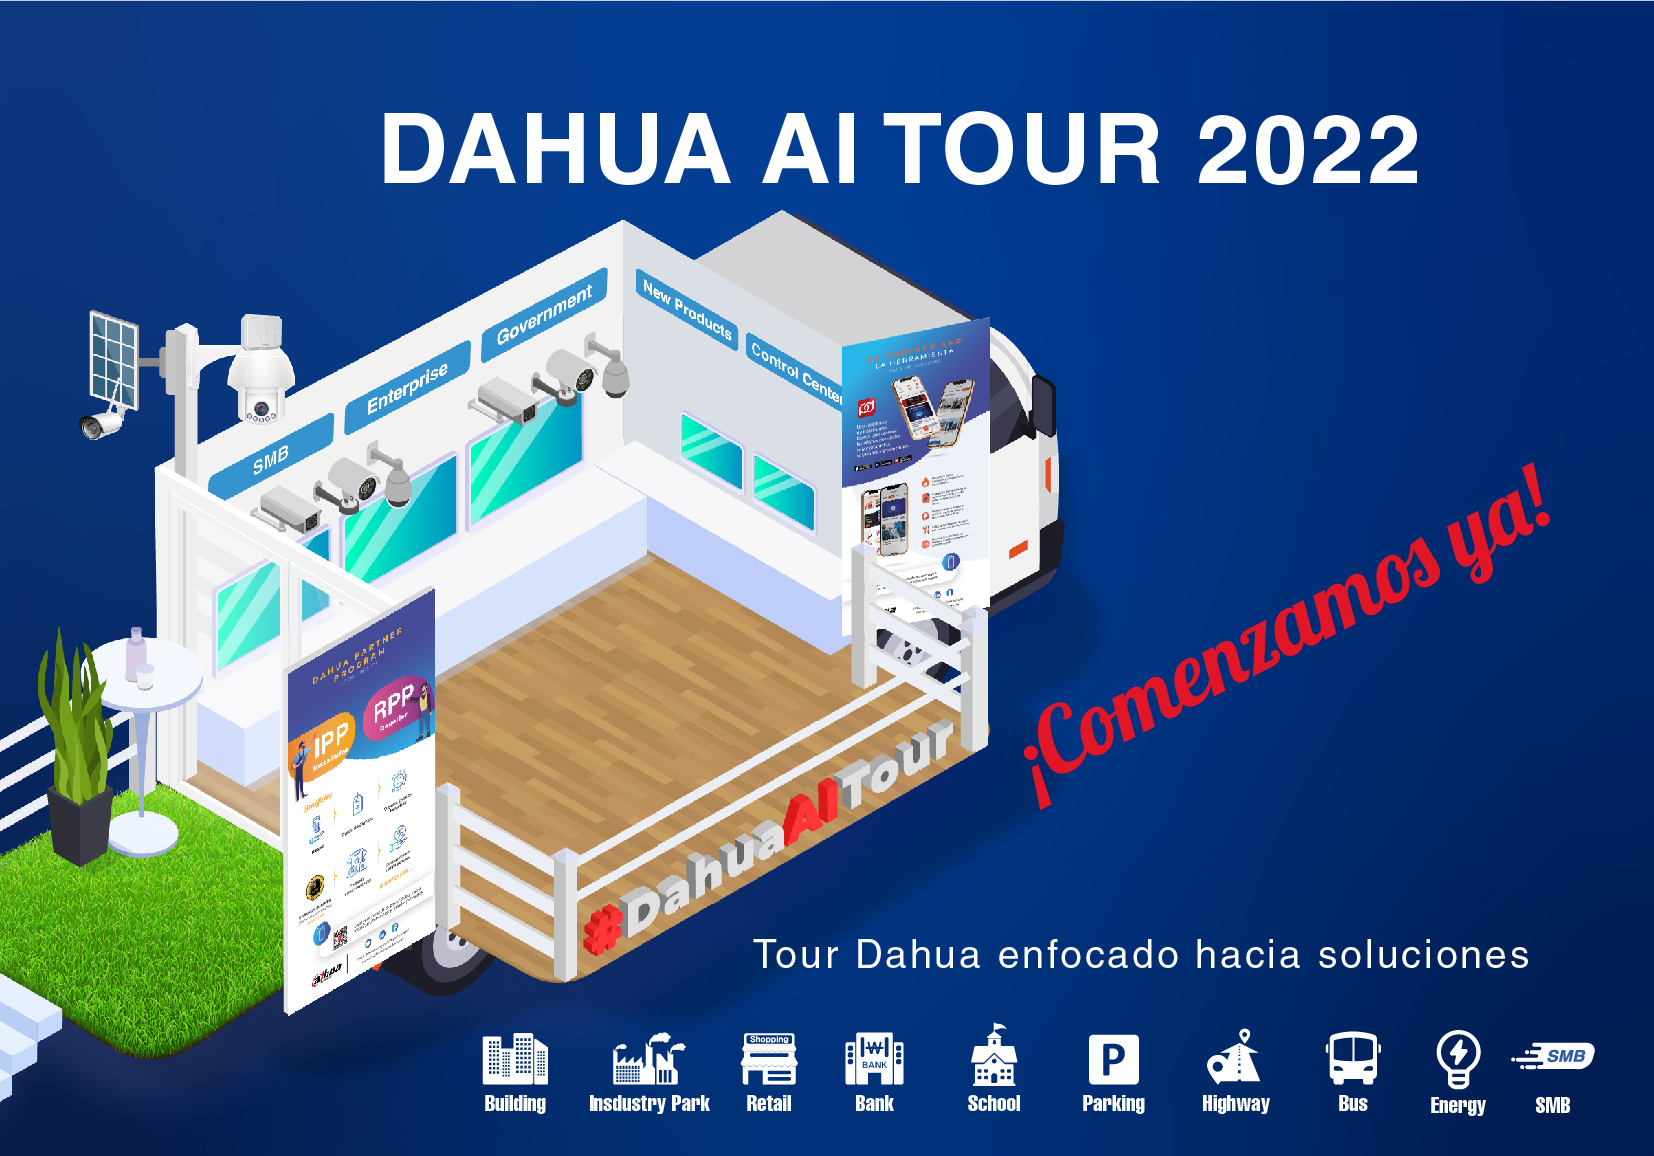 Dahua AI Tour vuelve en 2022 con soluciones y nuevos conceptos